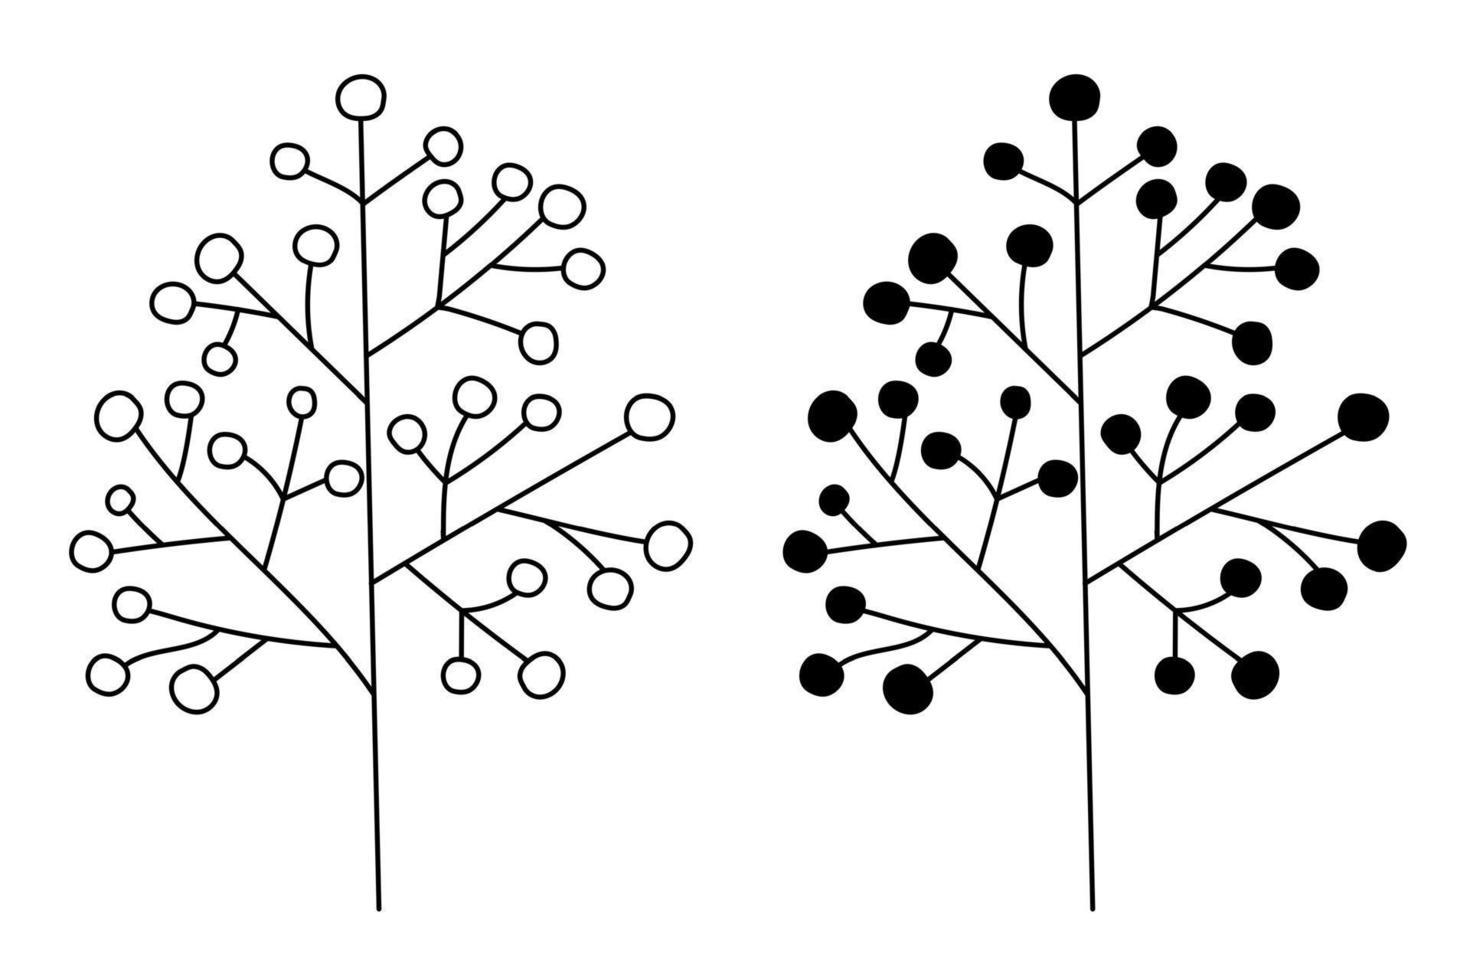 le contour de la silhouette des inflorescences florales chez les plantes sur la tige. vecteur isolé